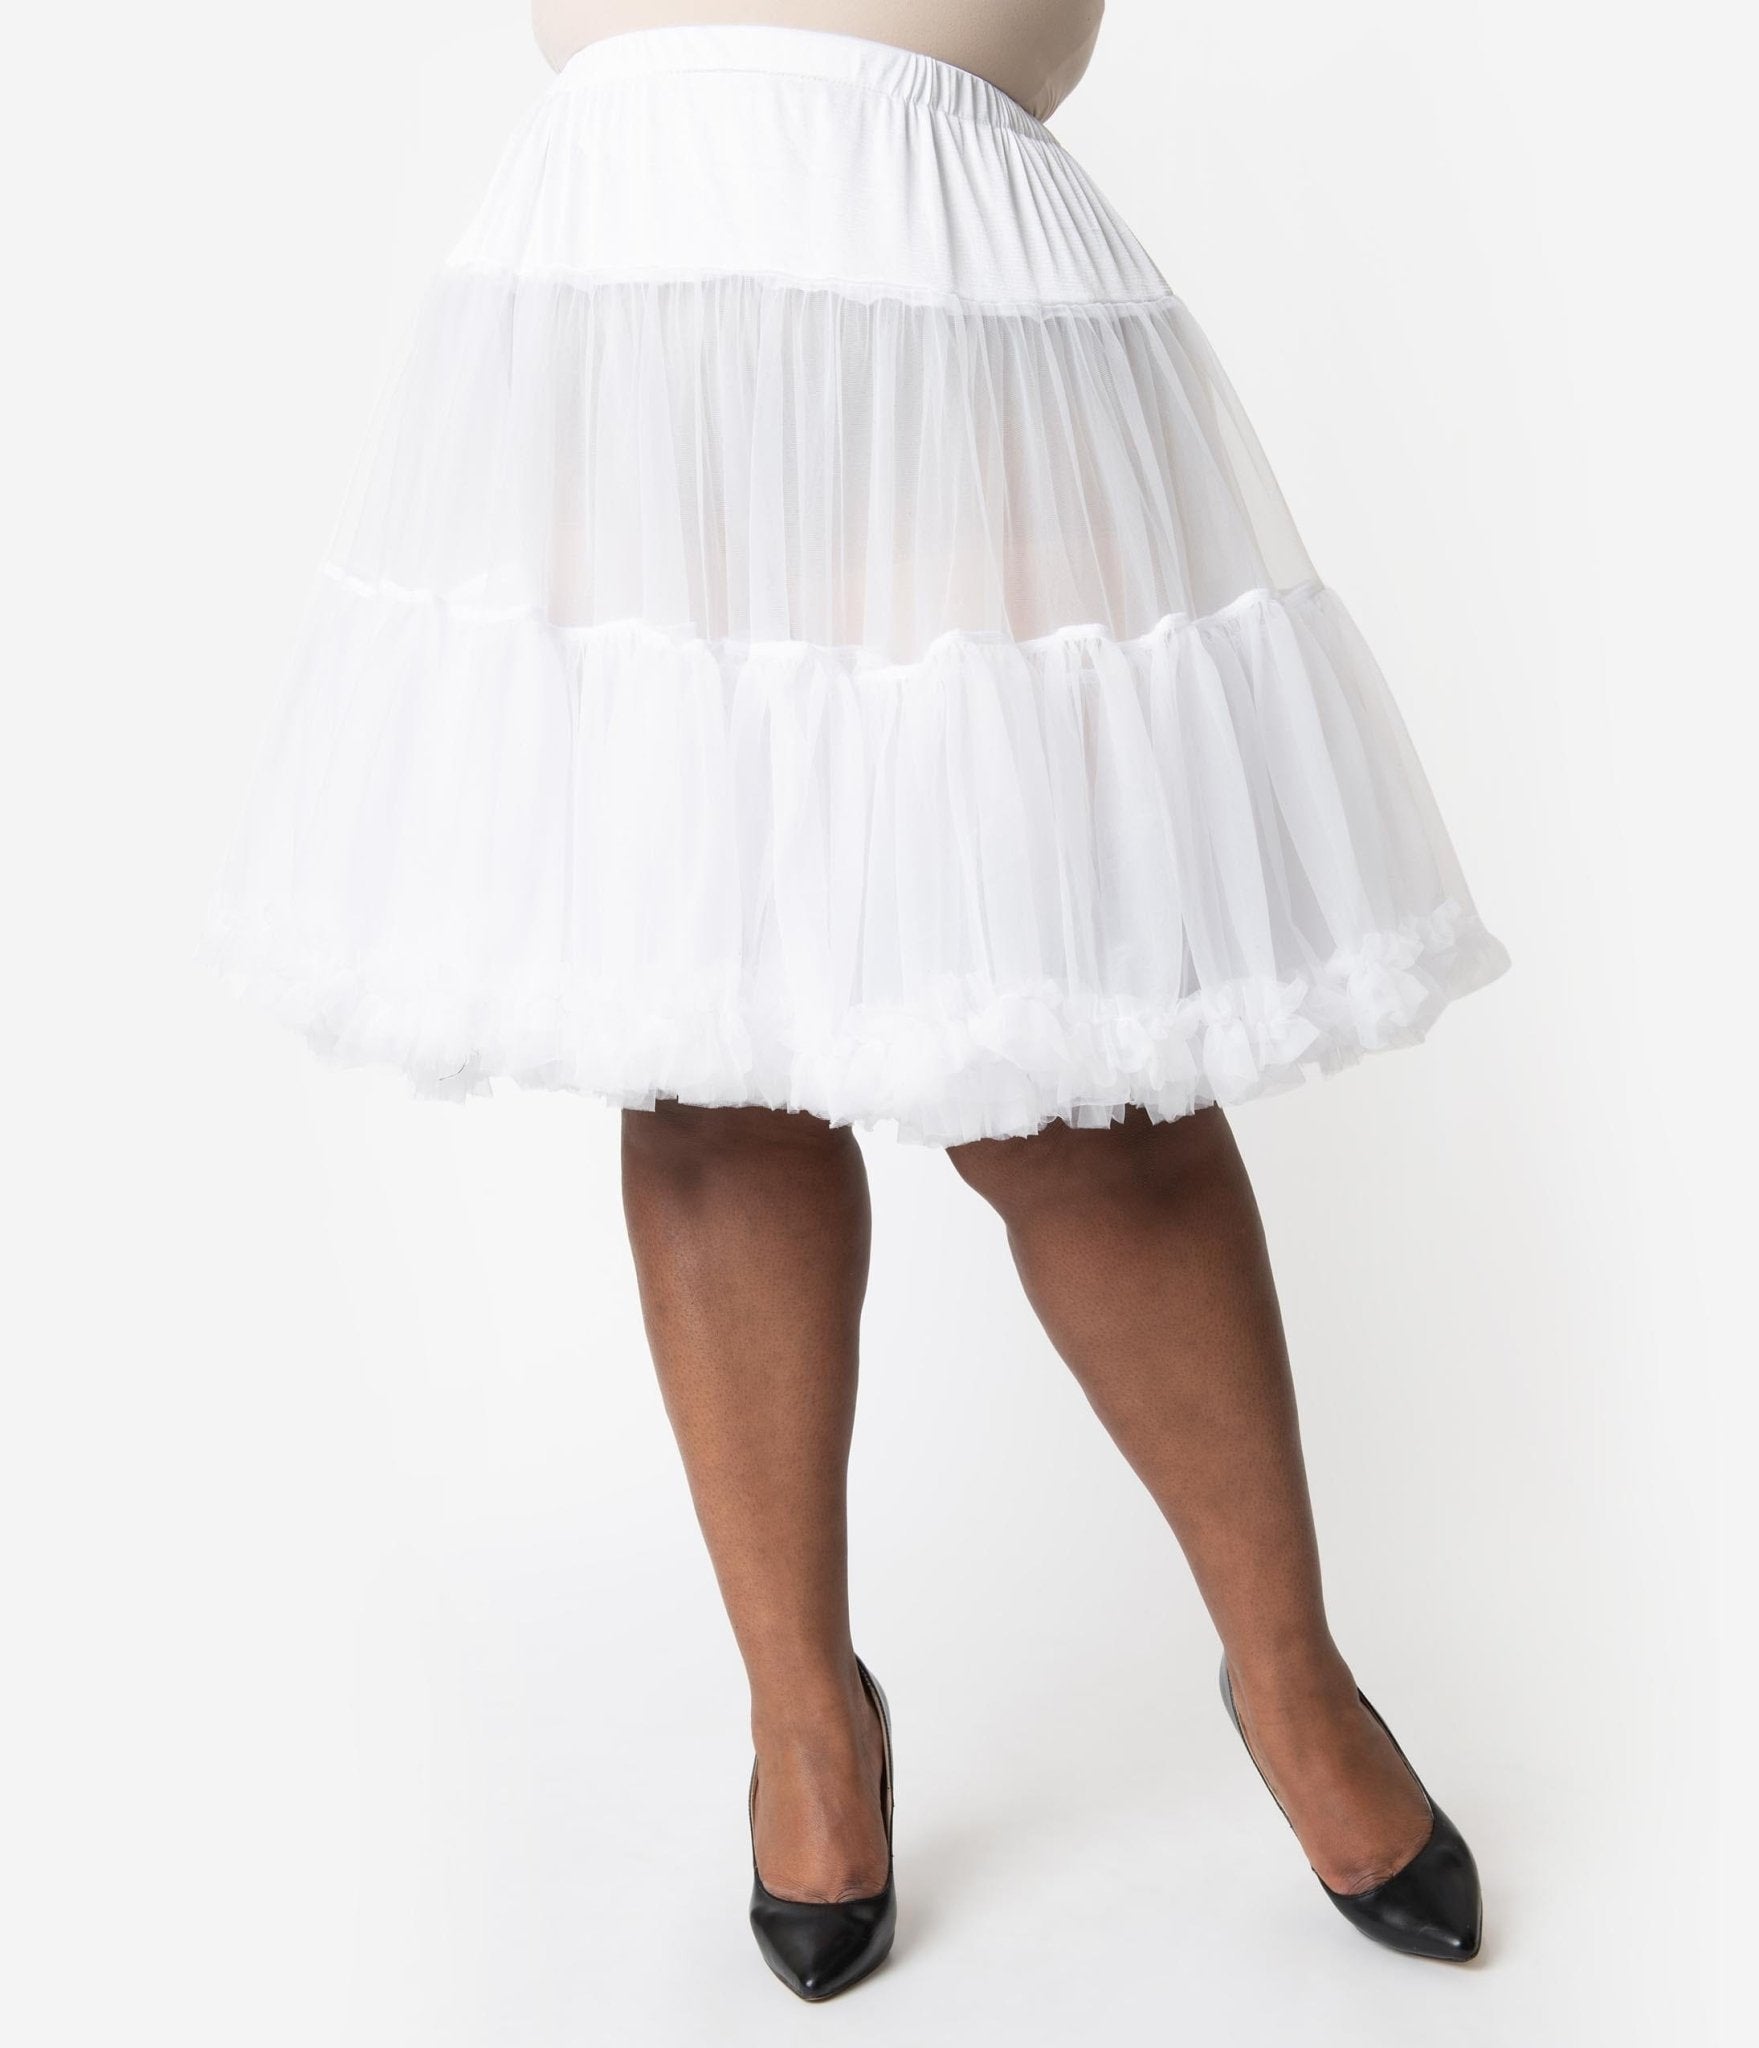 Petticoat for Skirts (Black) - Knee-Length – Fresh Hot Flavors